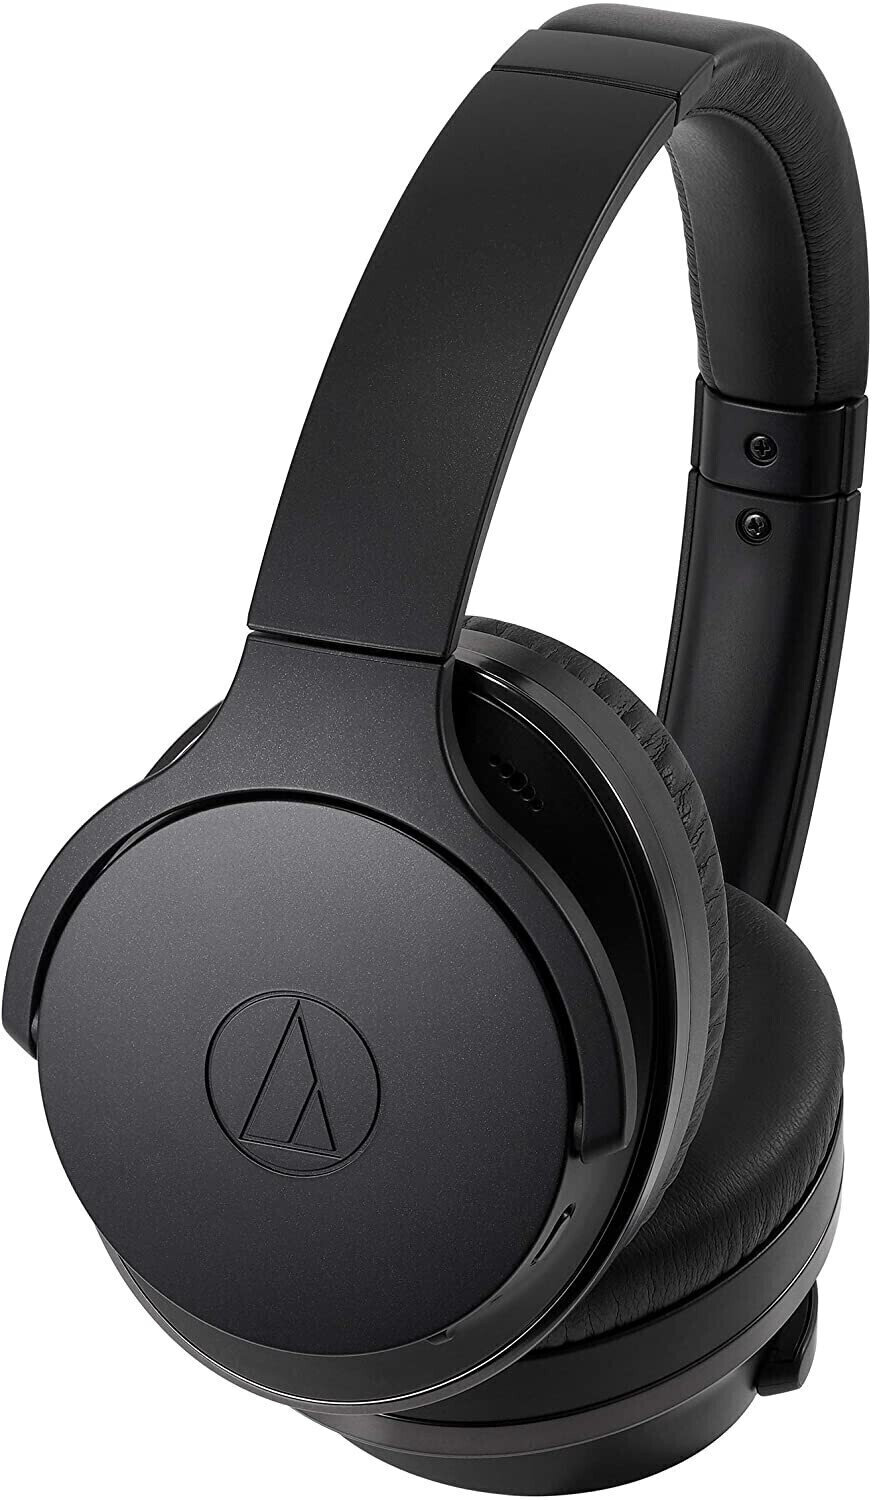 Langattomat On-ear-kuulokkeet Audio-Technica ATH-ANC900BT Black